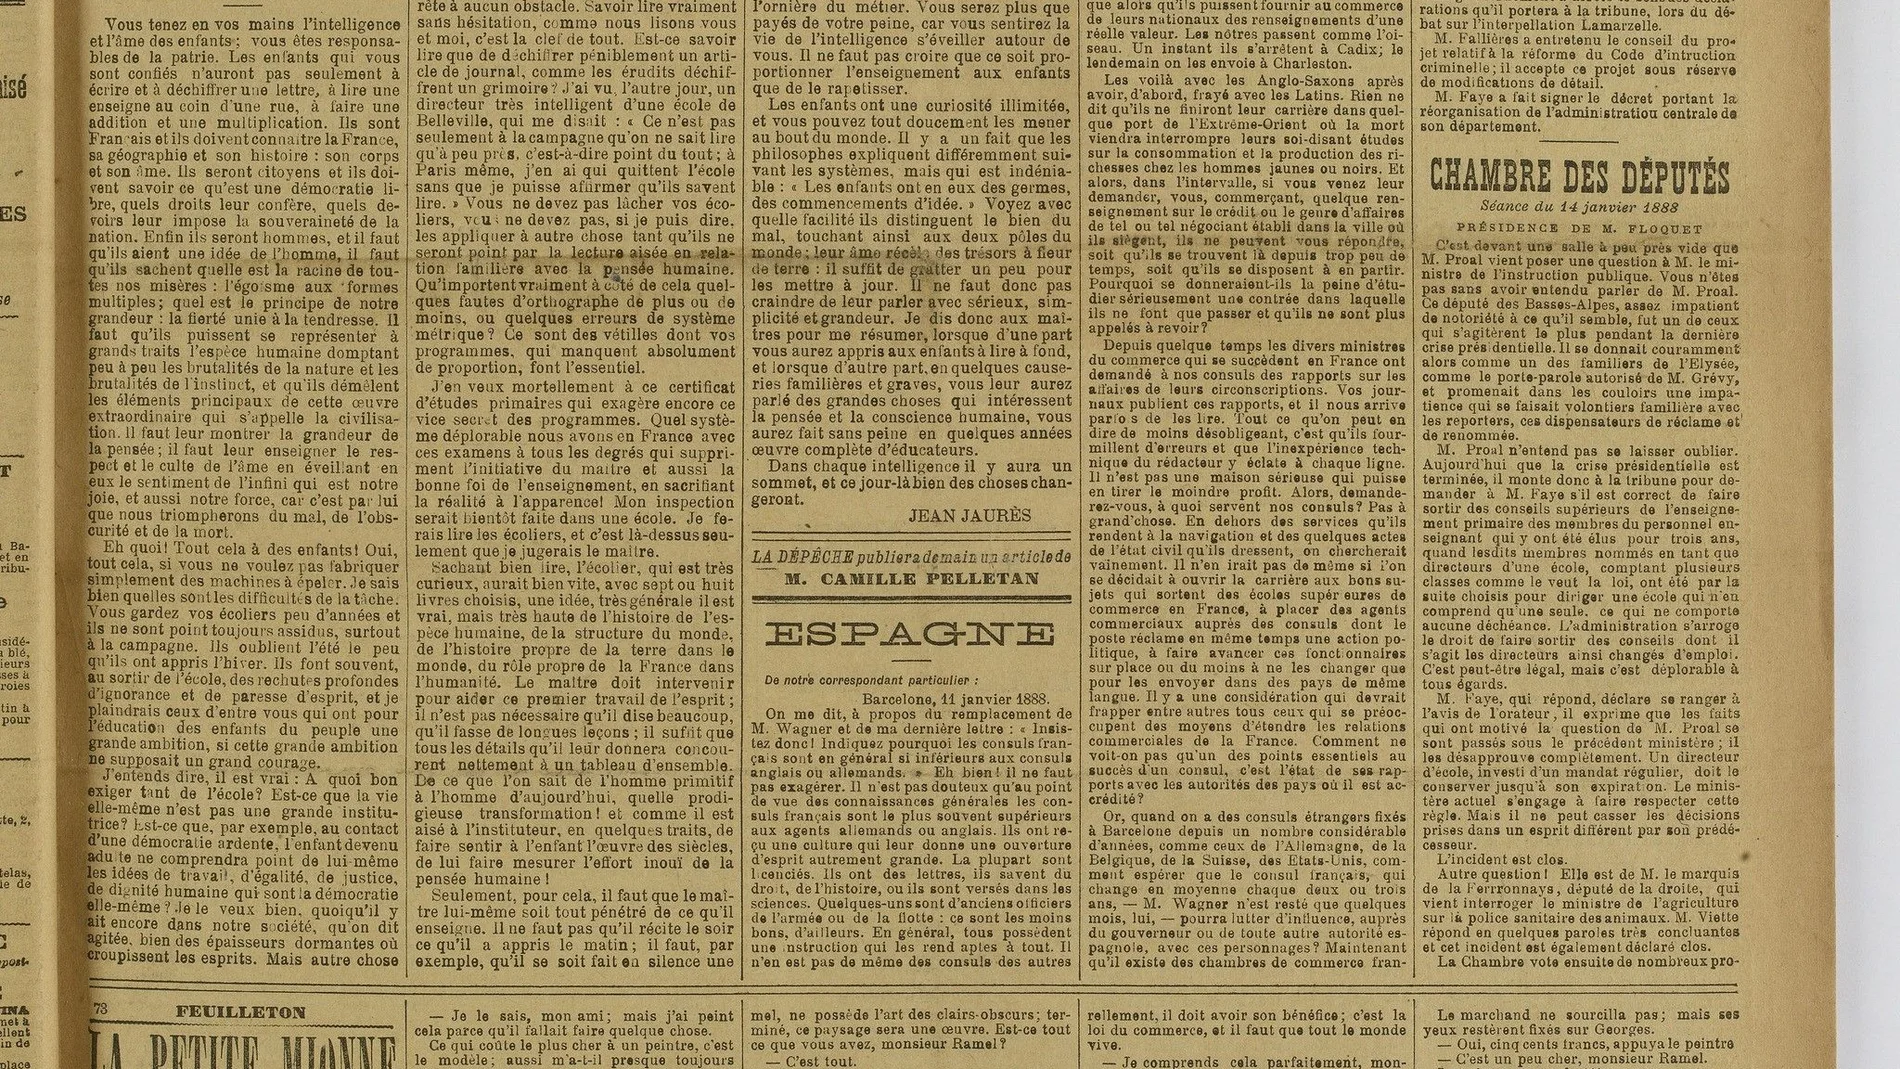 La primera plana del diario «La Dépêche» donde apareció la famosa carta de Jean Jaurès